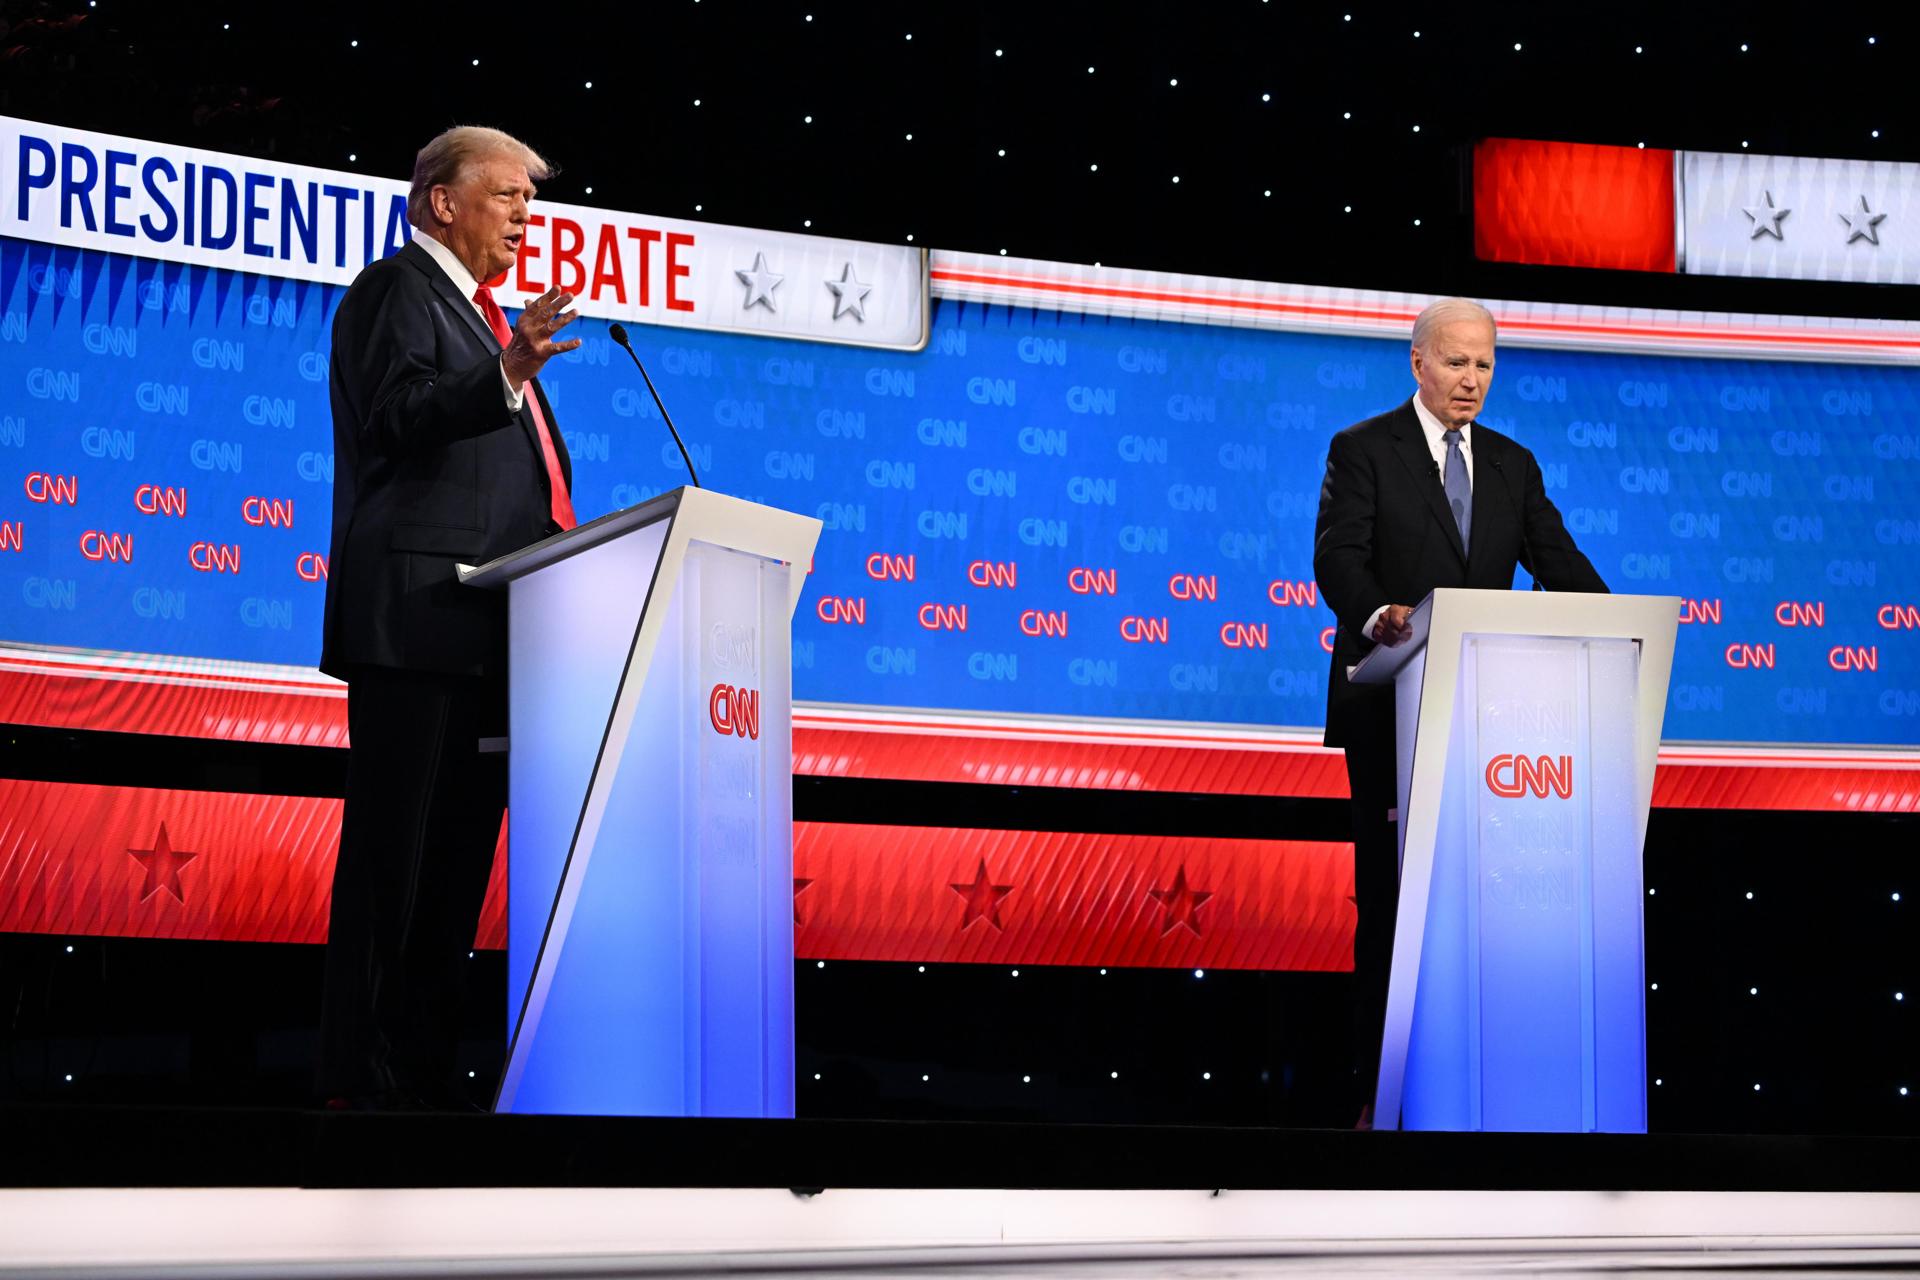 Els dos candidats en un moment del debat (fotografia: Bill Lazoni/CNN).